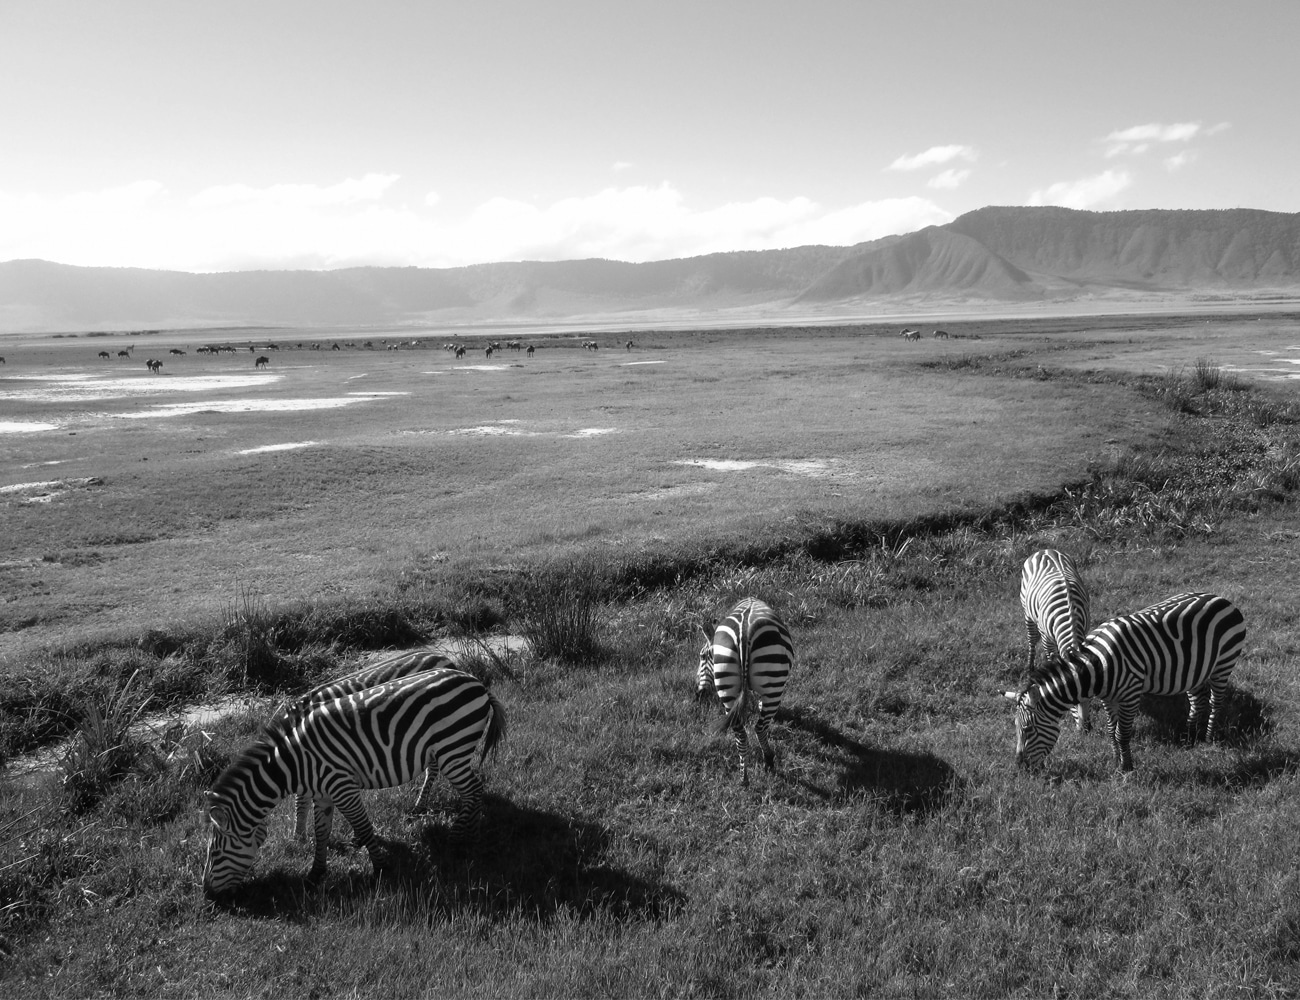 Animals at Ngorongoro Conservation Area